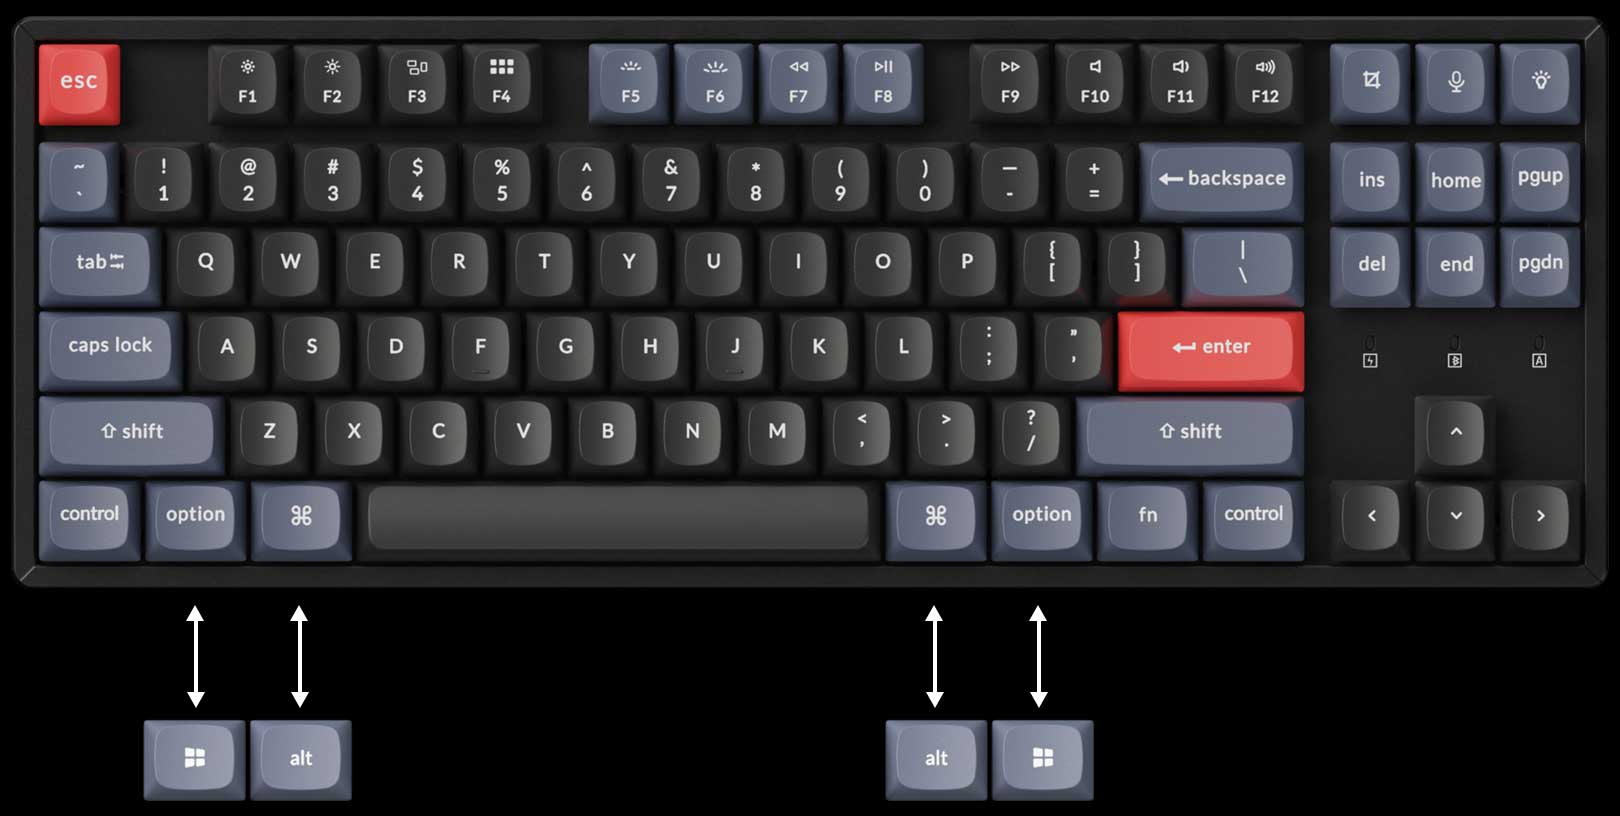 Keychron K8 Pro keyboard layout